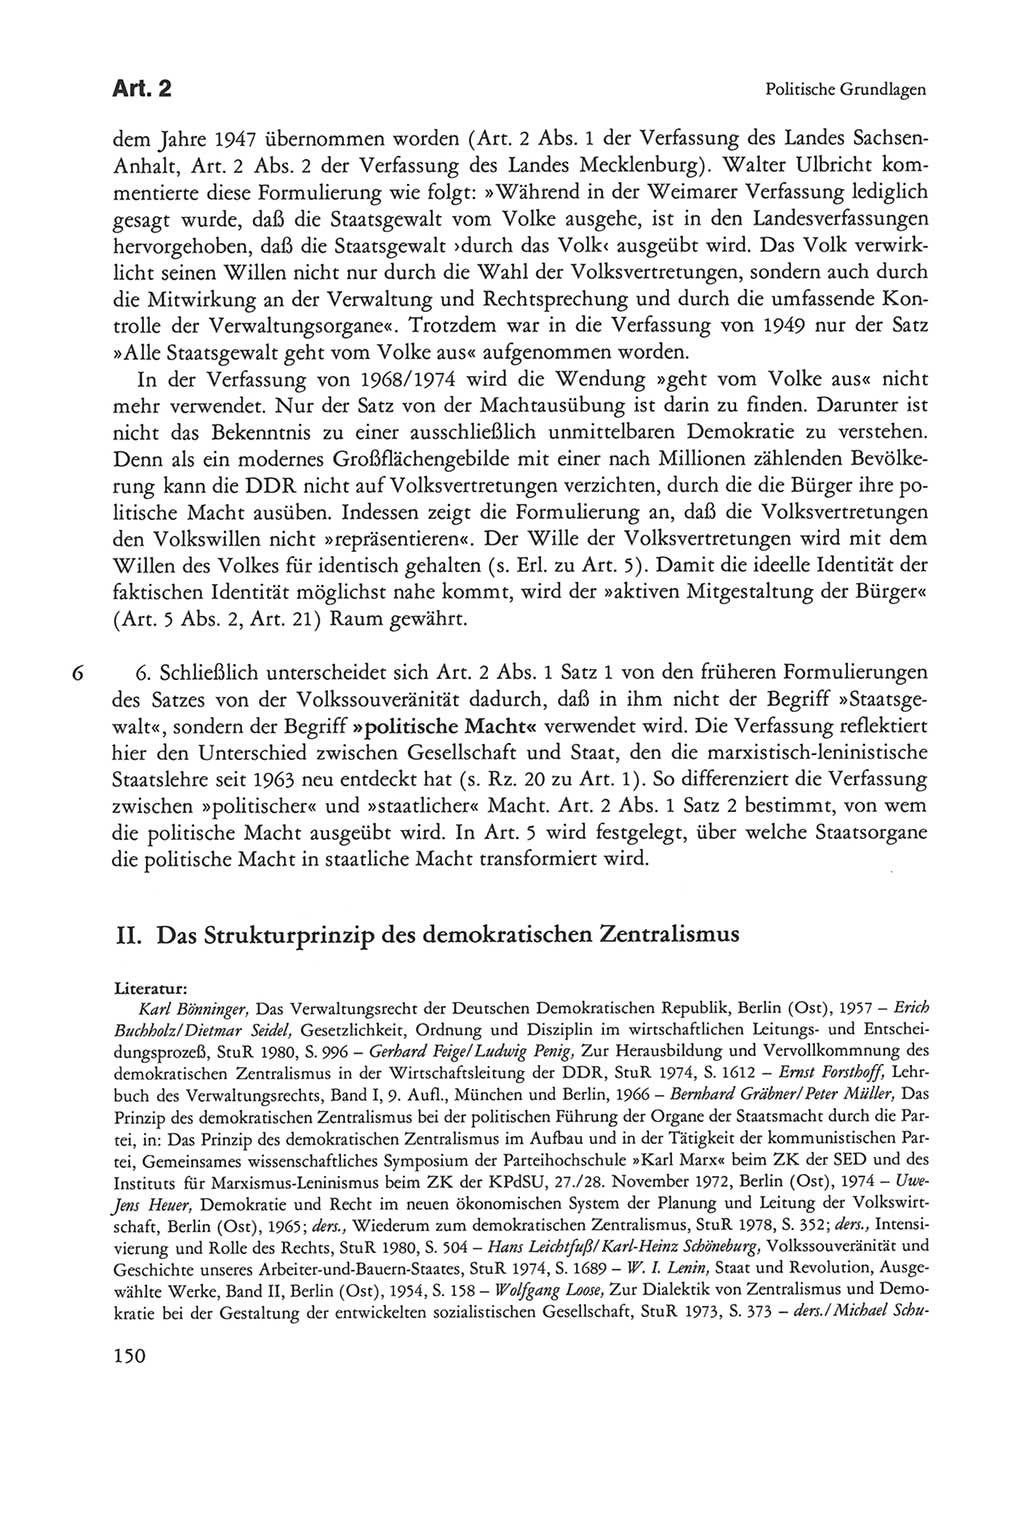 Die sozialistische Verfassung der Deutschen Demokratischen Republik (DDR), Kommentar mit einem Nachtrag 1997, Seite 150 (Soz. Verf. DDR Komm. Nachtr. 1997, S. 150)